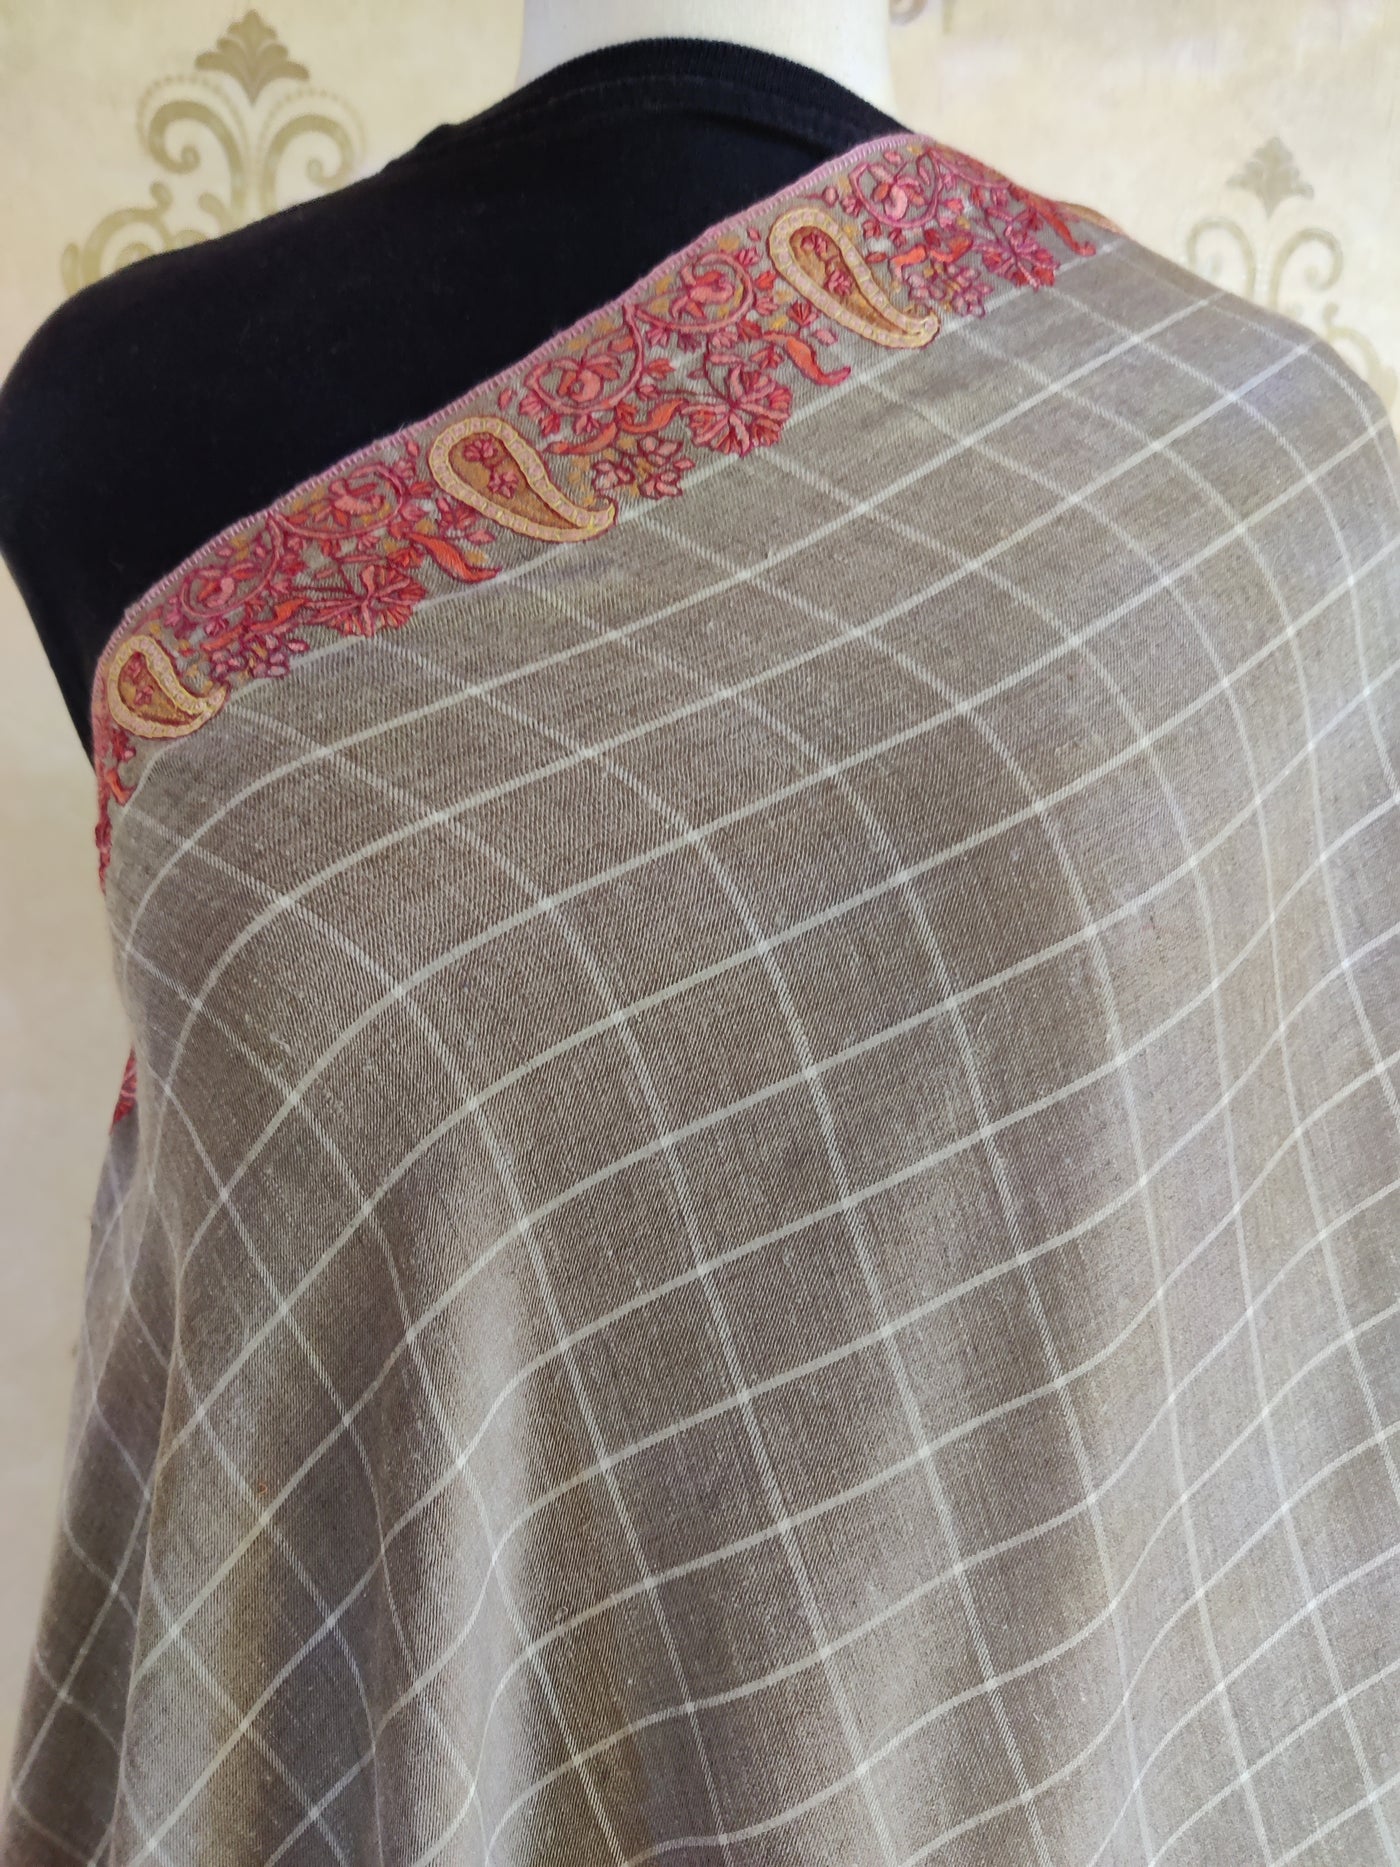 XL 3 Yards Roshanara Paisley Cascade: Pure Pashmina Shawl with Hand Sozni Embroidery